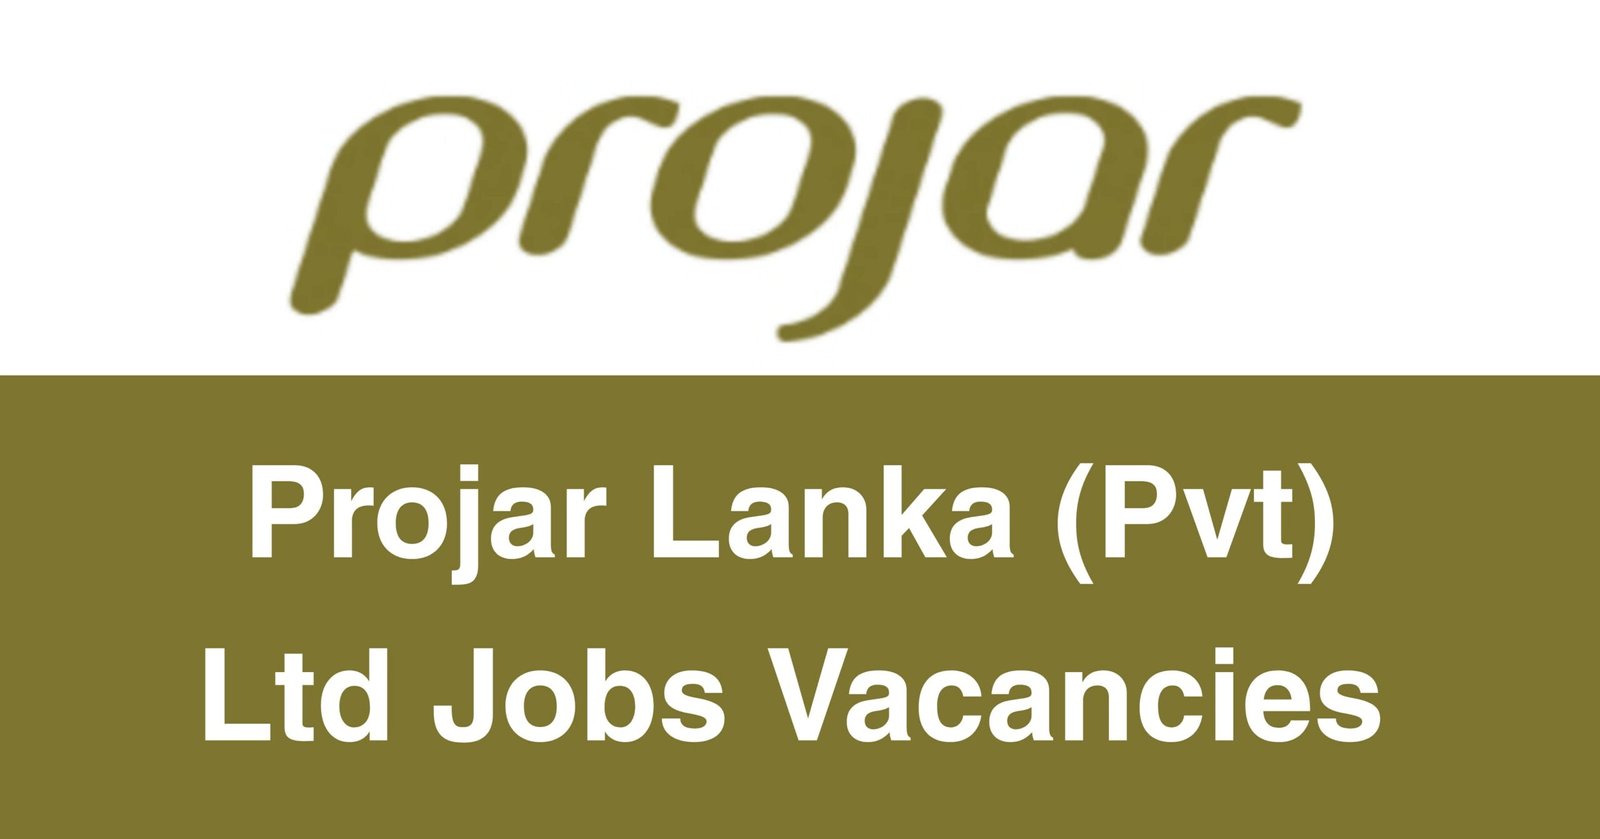 Projar Lanka (Pvt) Ltd Jobs Vacancies